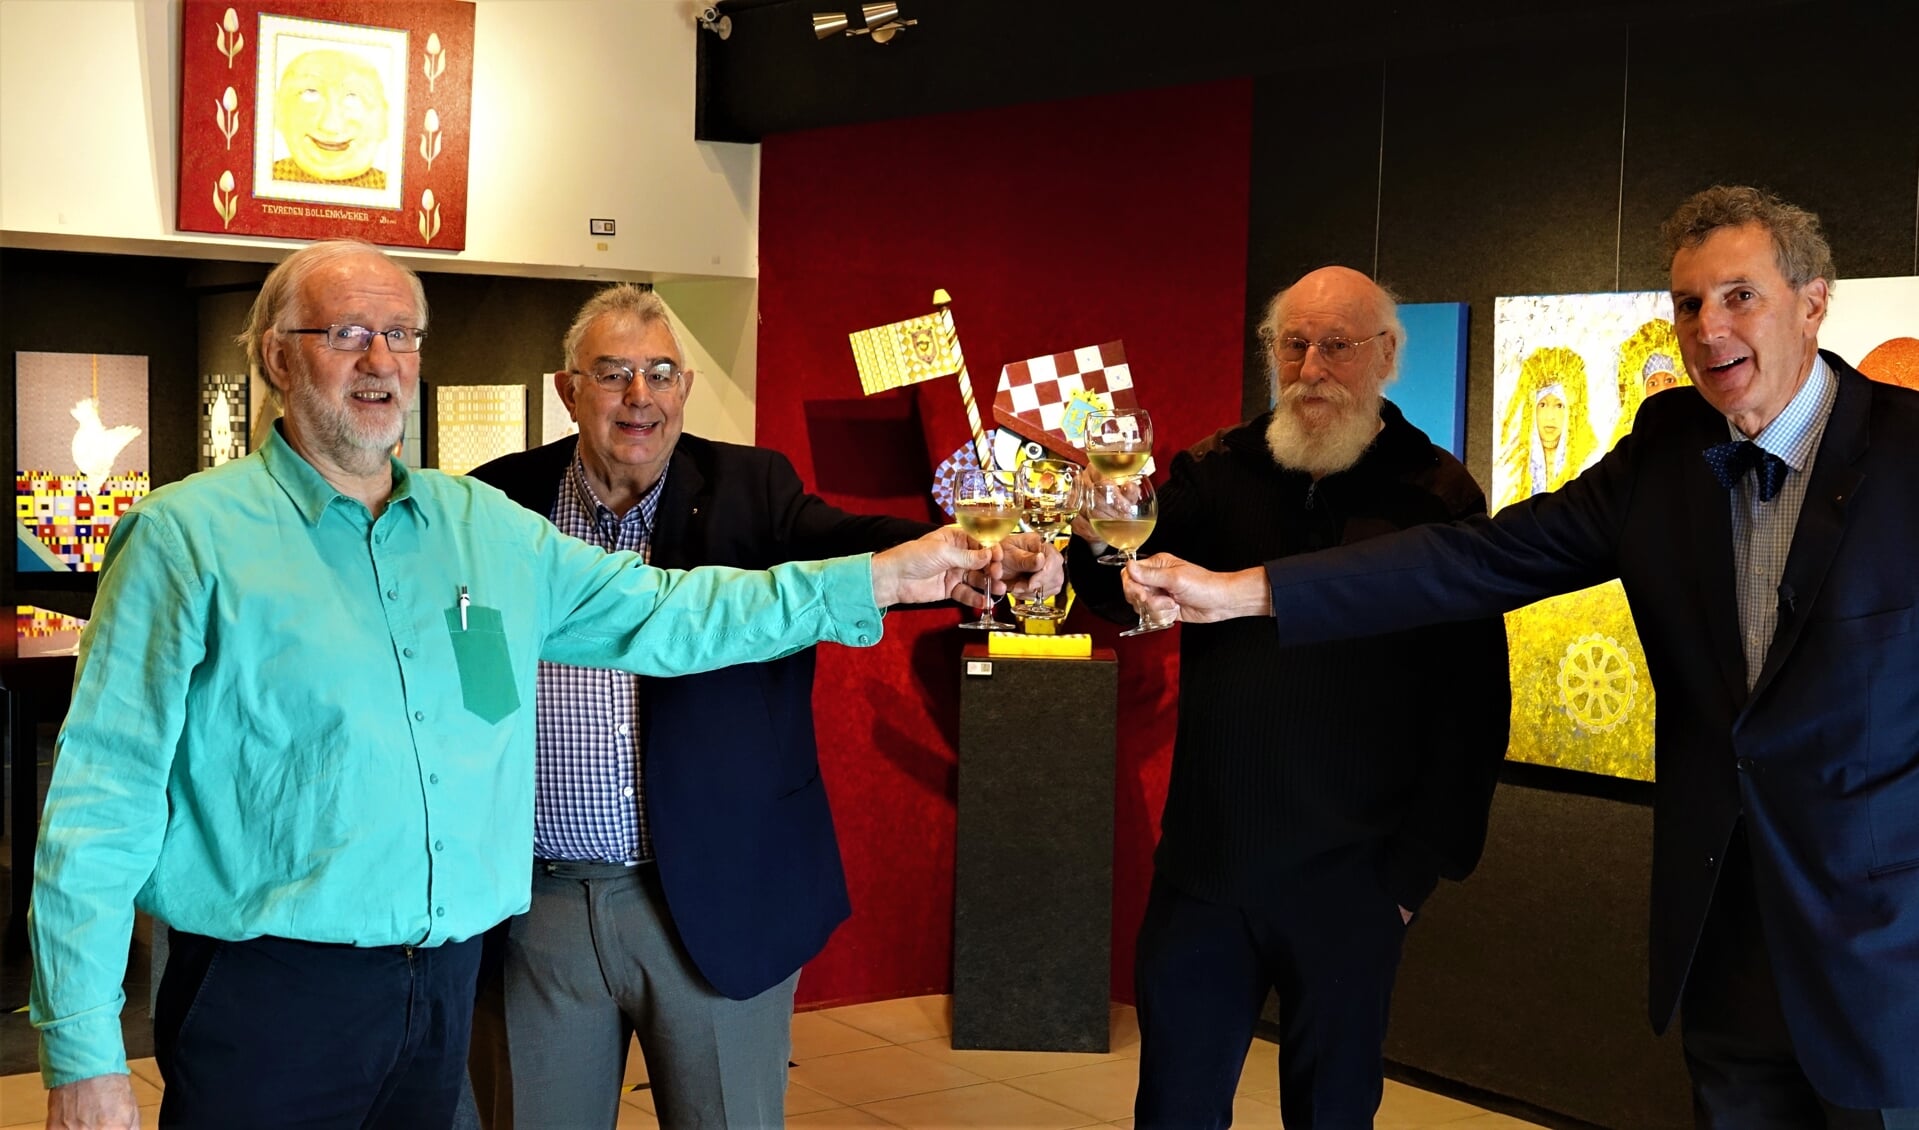 Fysieke toast tijdens een digitale opening. (Roel van der Veen, Pieter Smits, Jan Brandsma en Paulus Smits